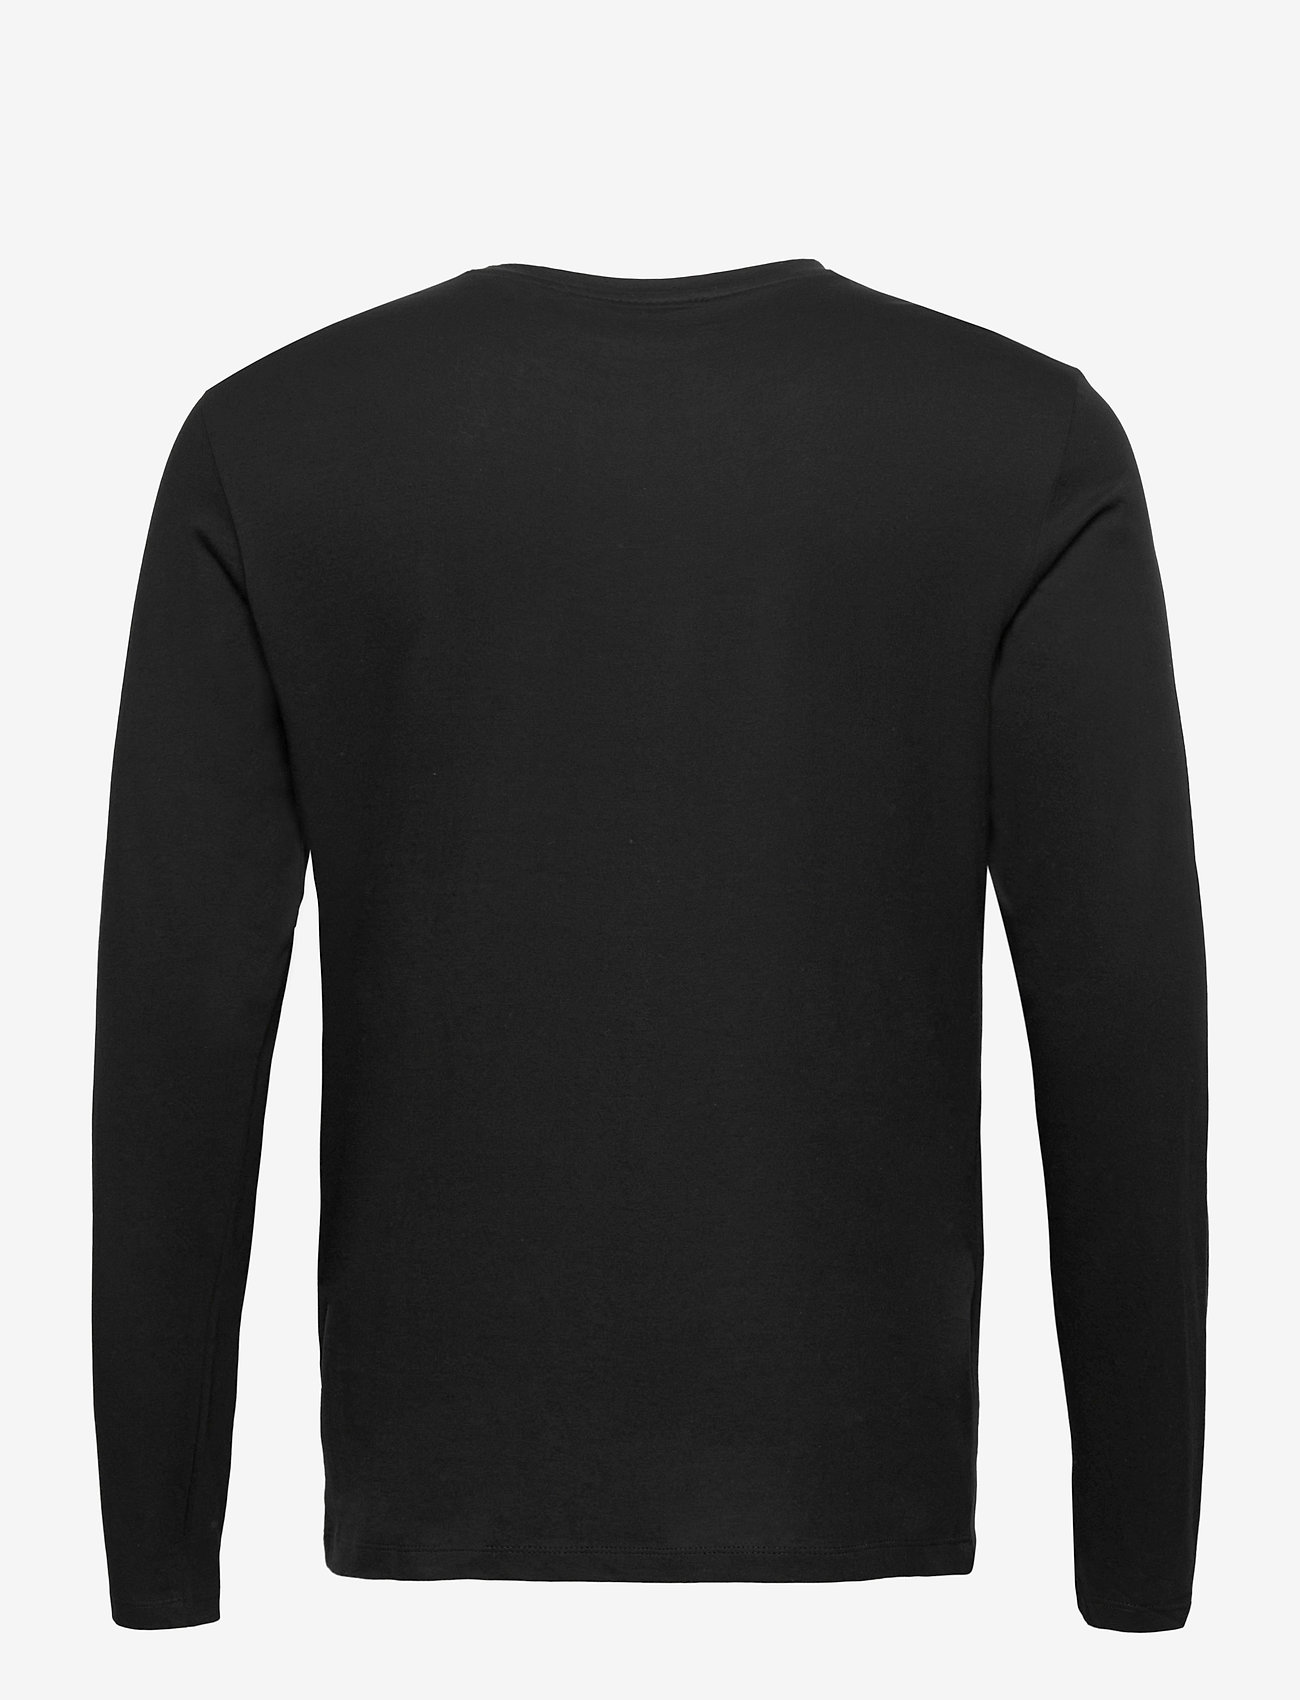 HUGO - Derol212 - basic t-shirts - black - 1